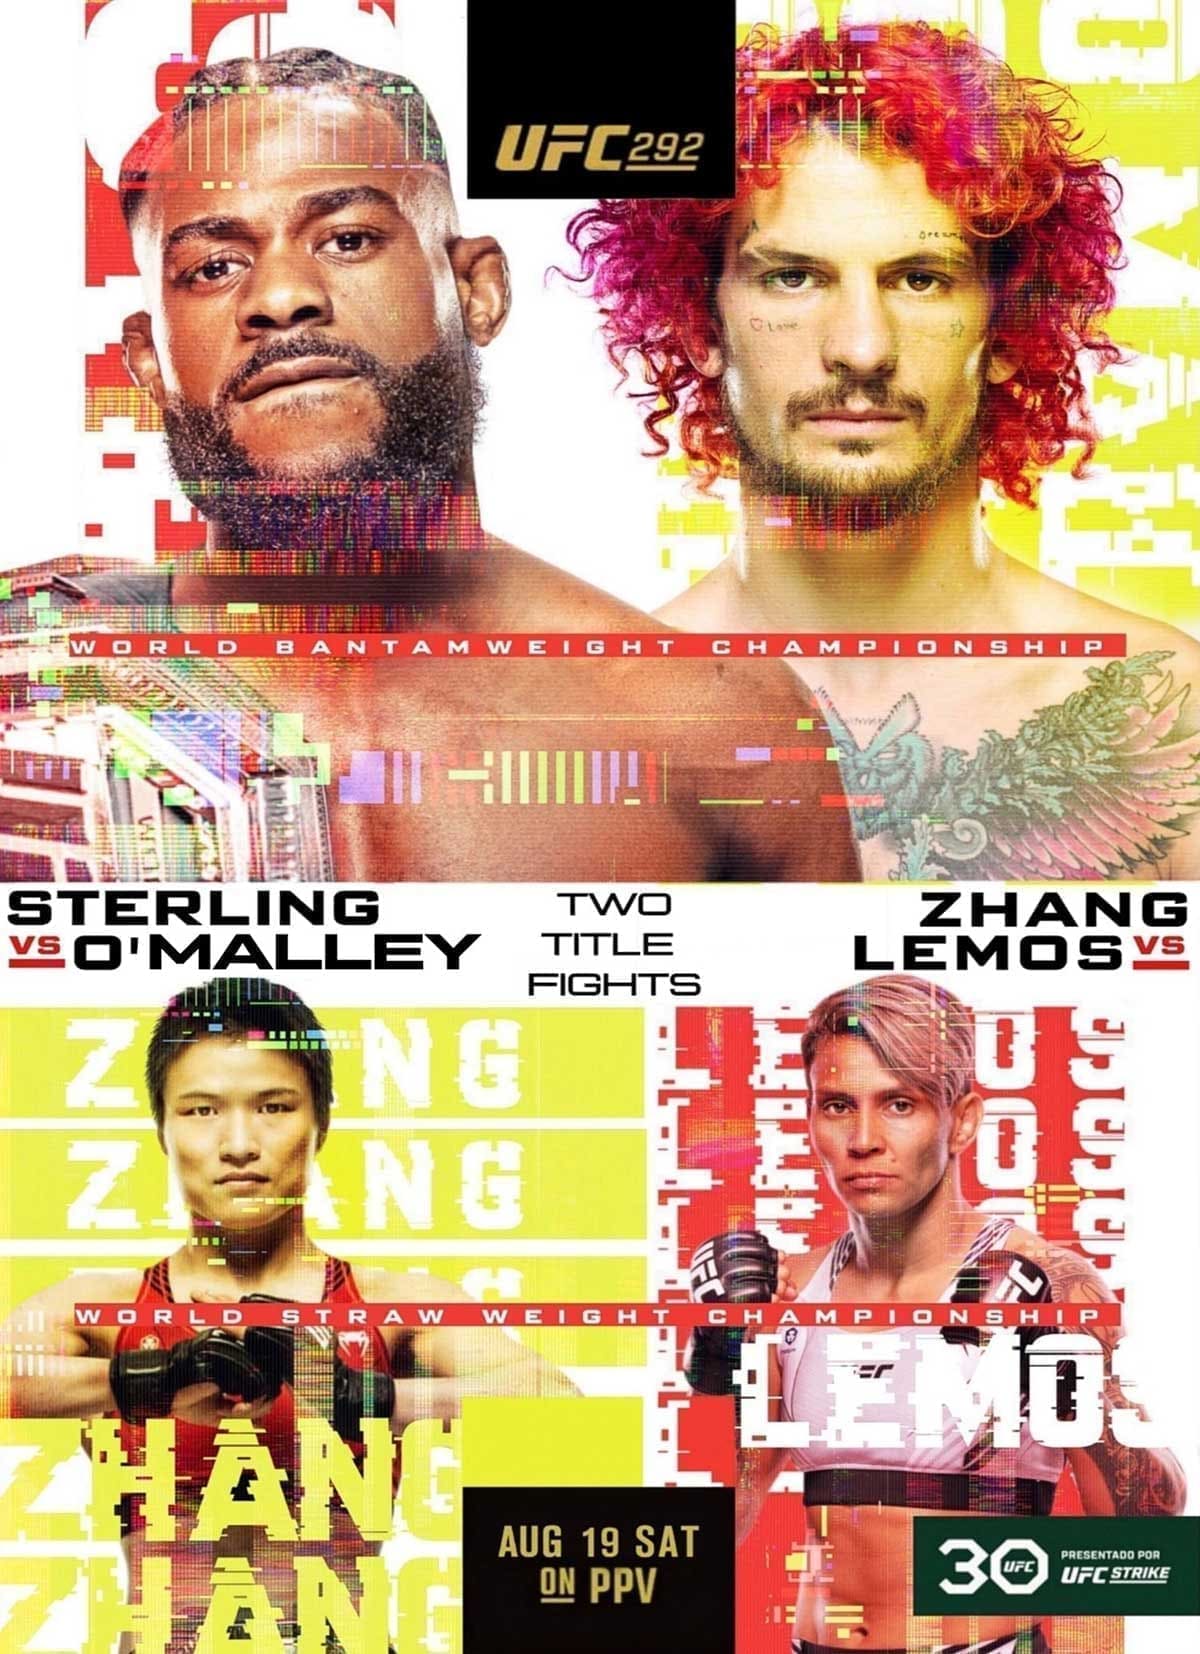 UFC 292: Стерлинг - О'Мэлли дата проведения, кард, участники и результаты